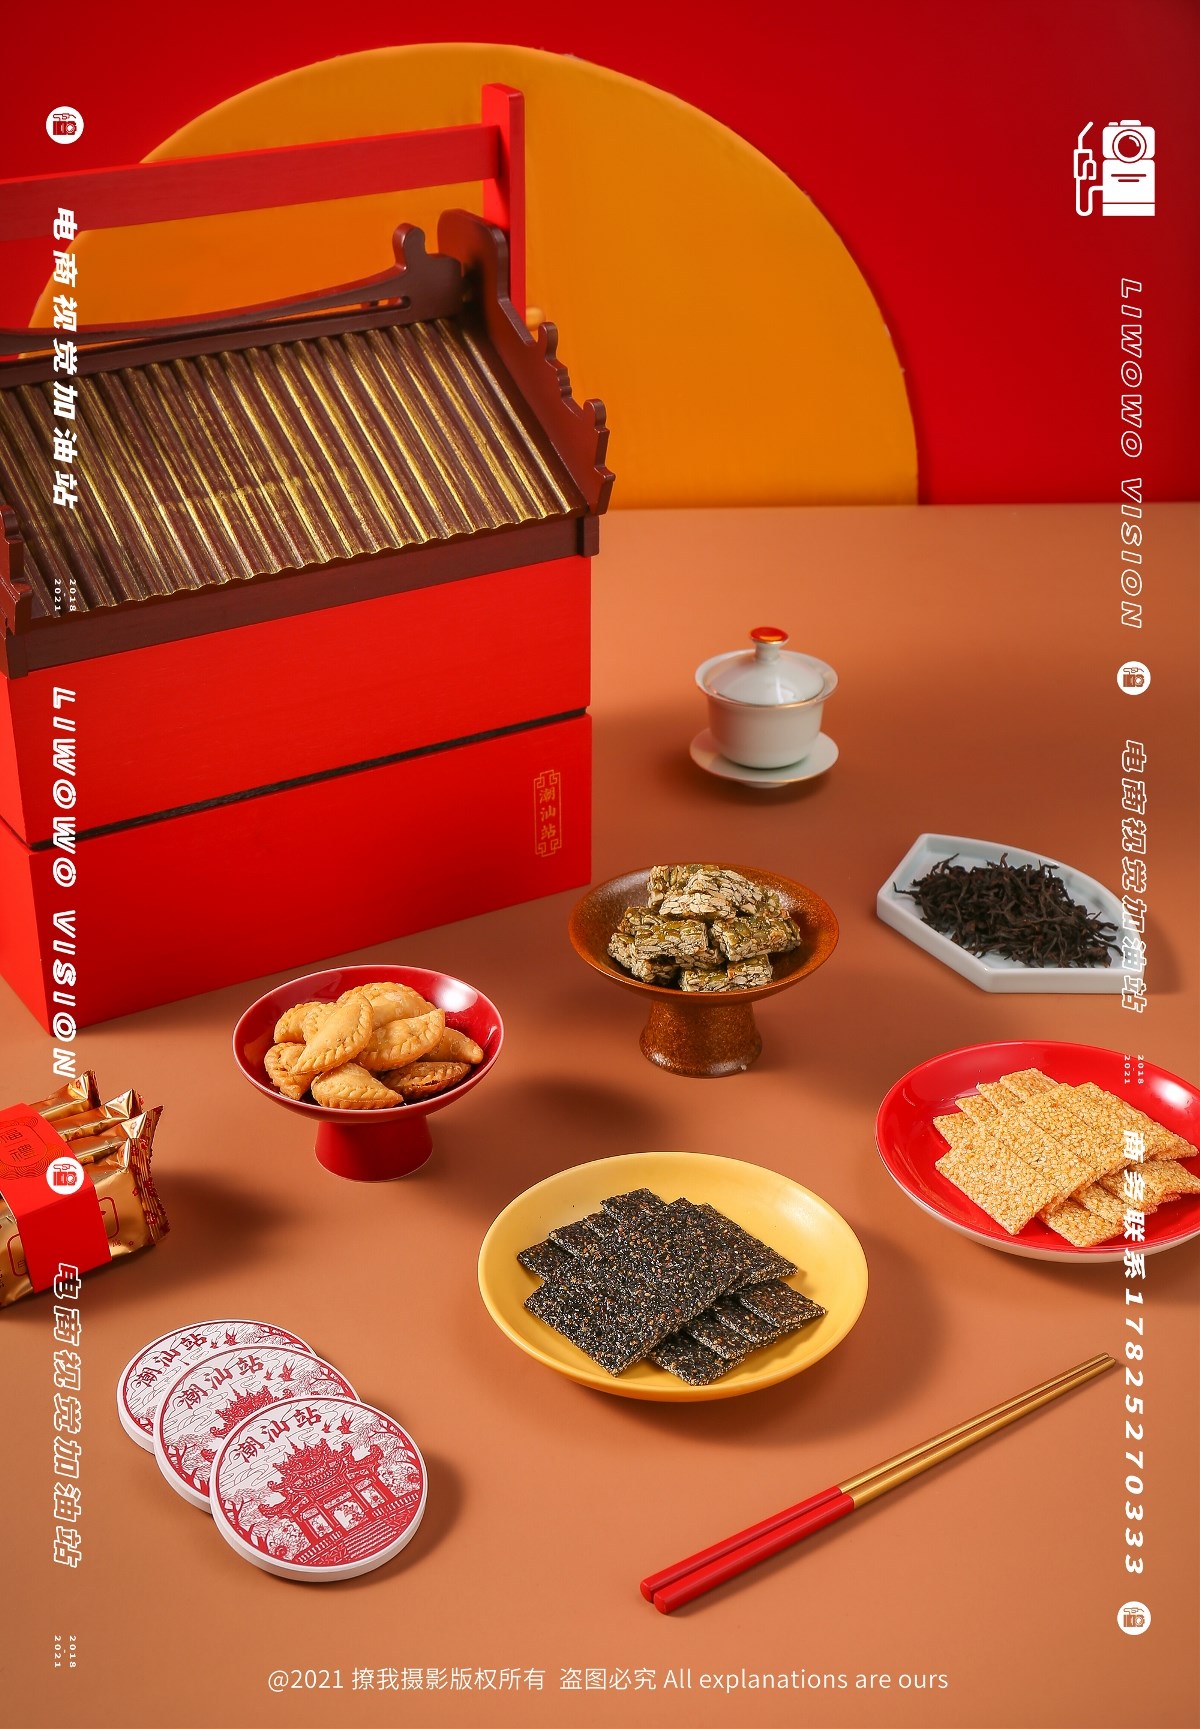 食品拍摄 | 潮汕站 x 春节礼盒系列 x LIAOWO VISION 